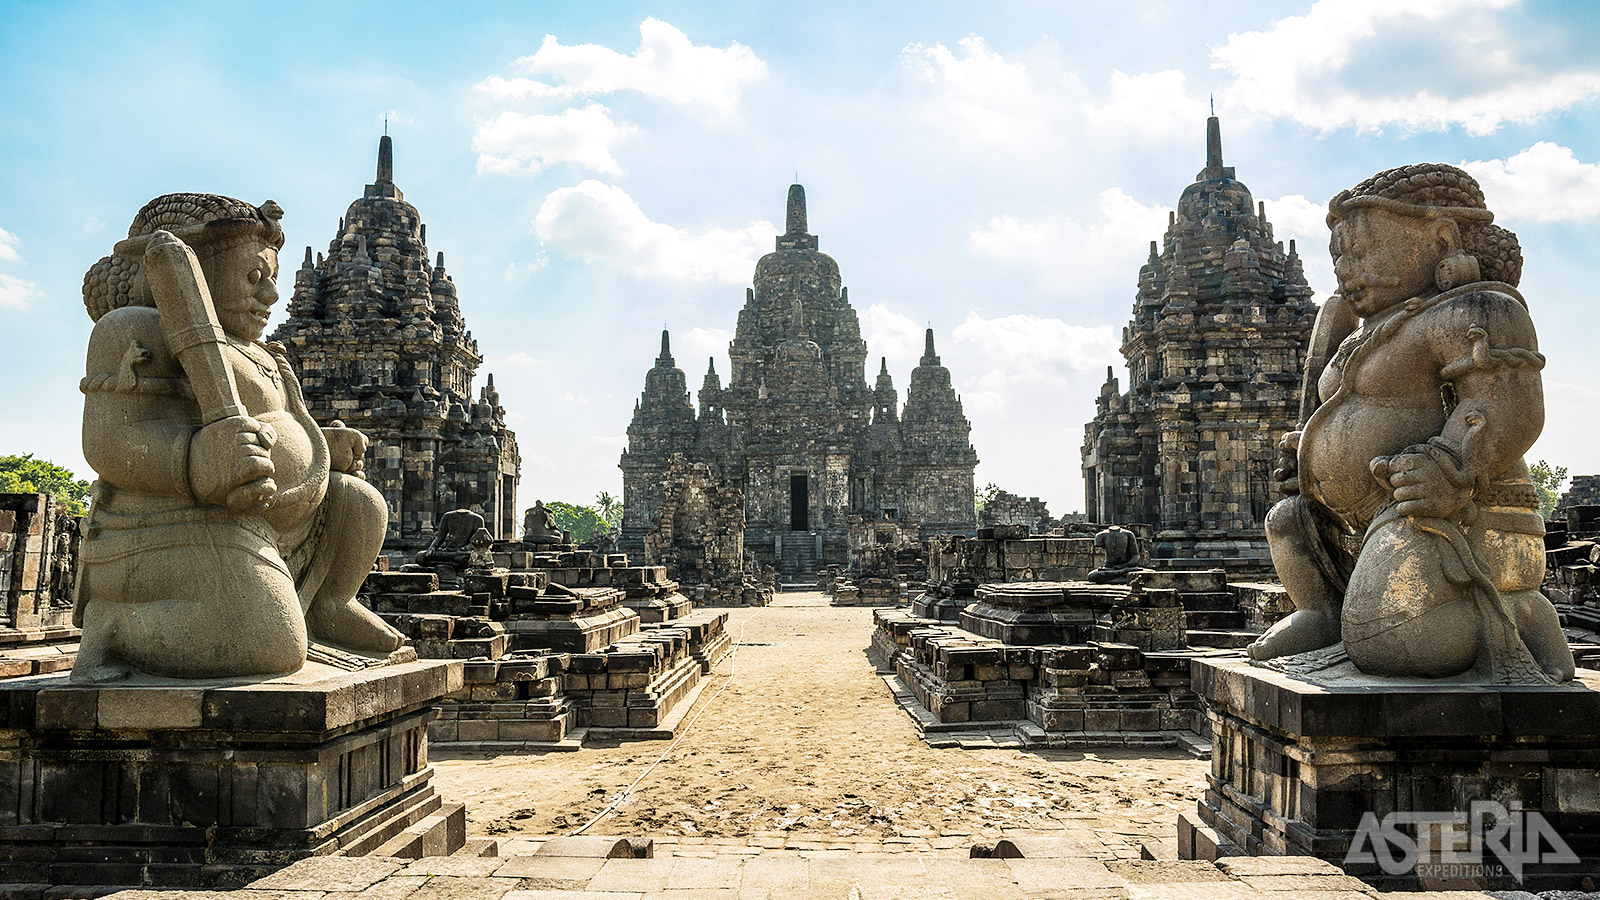 De Prambanan Tempel is een spectaculair en goed bewaard tempelcomplex uit de oude Hindoe cultuur